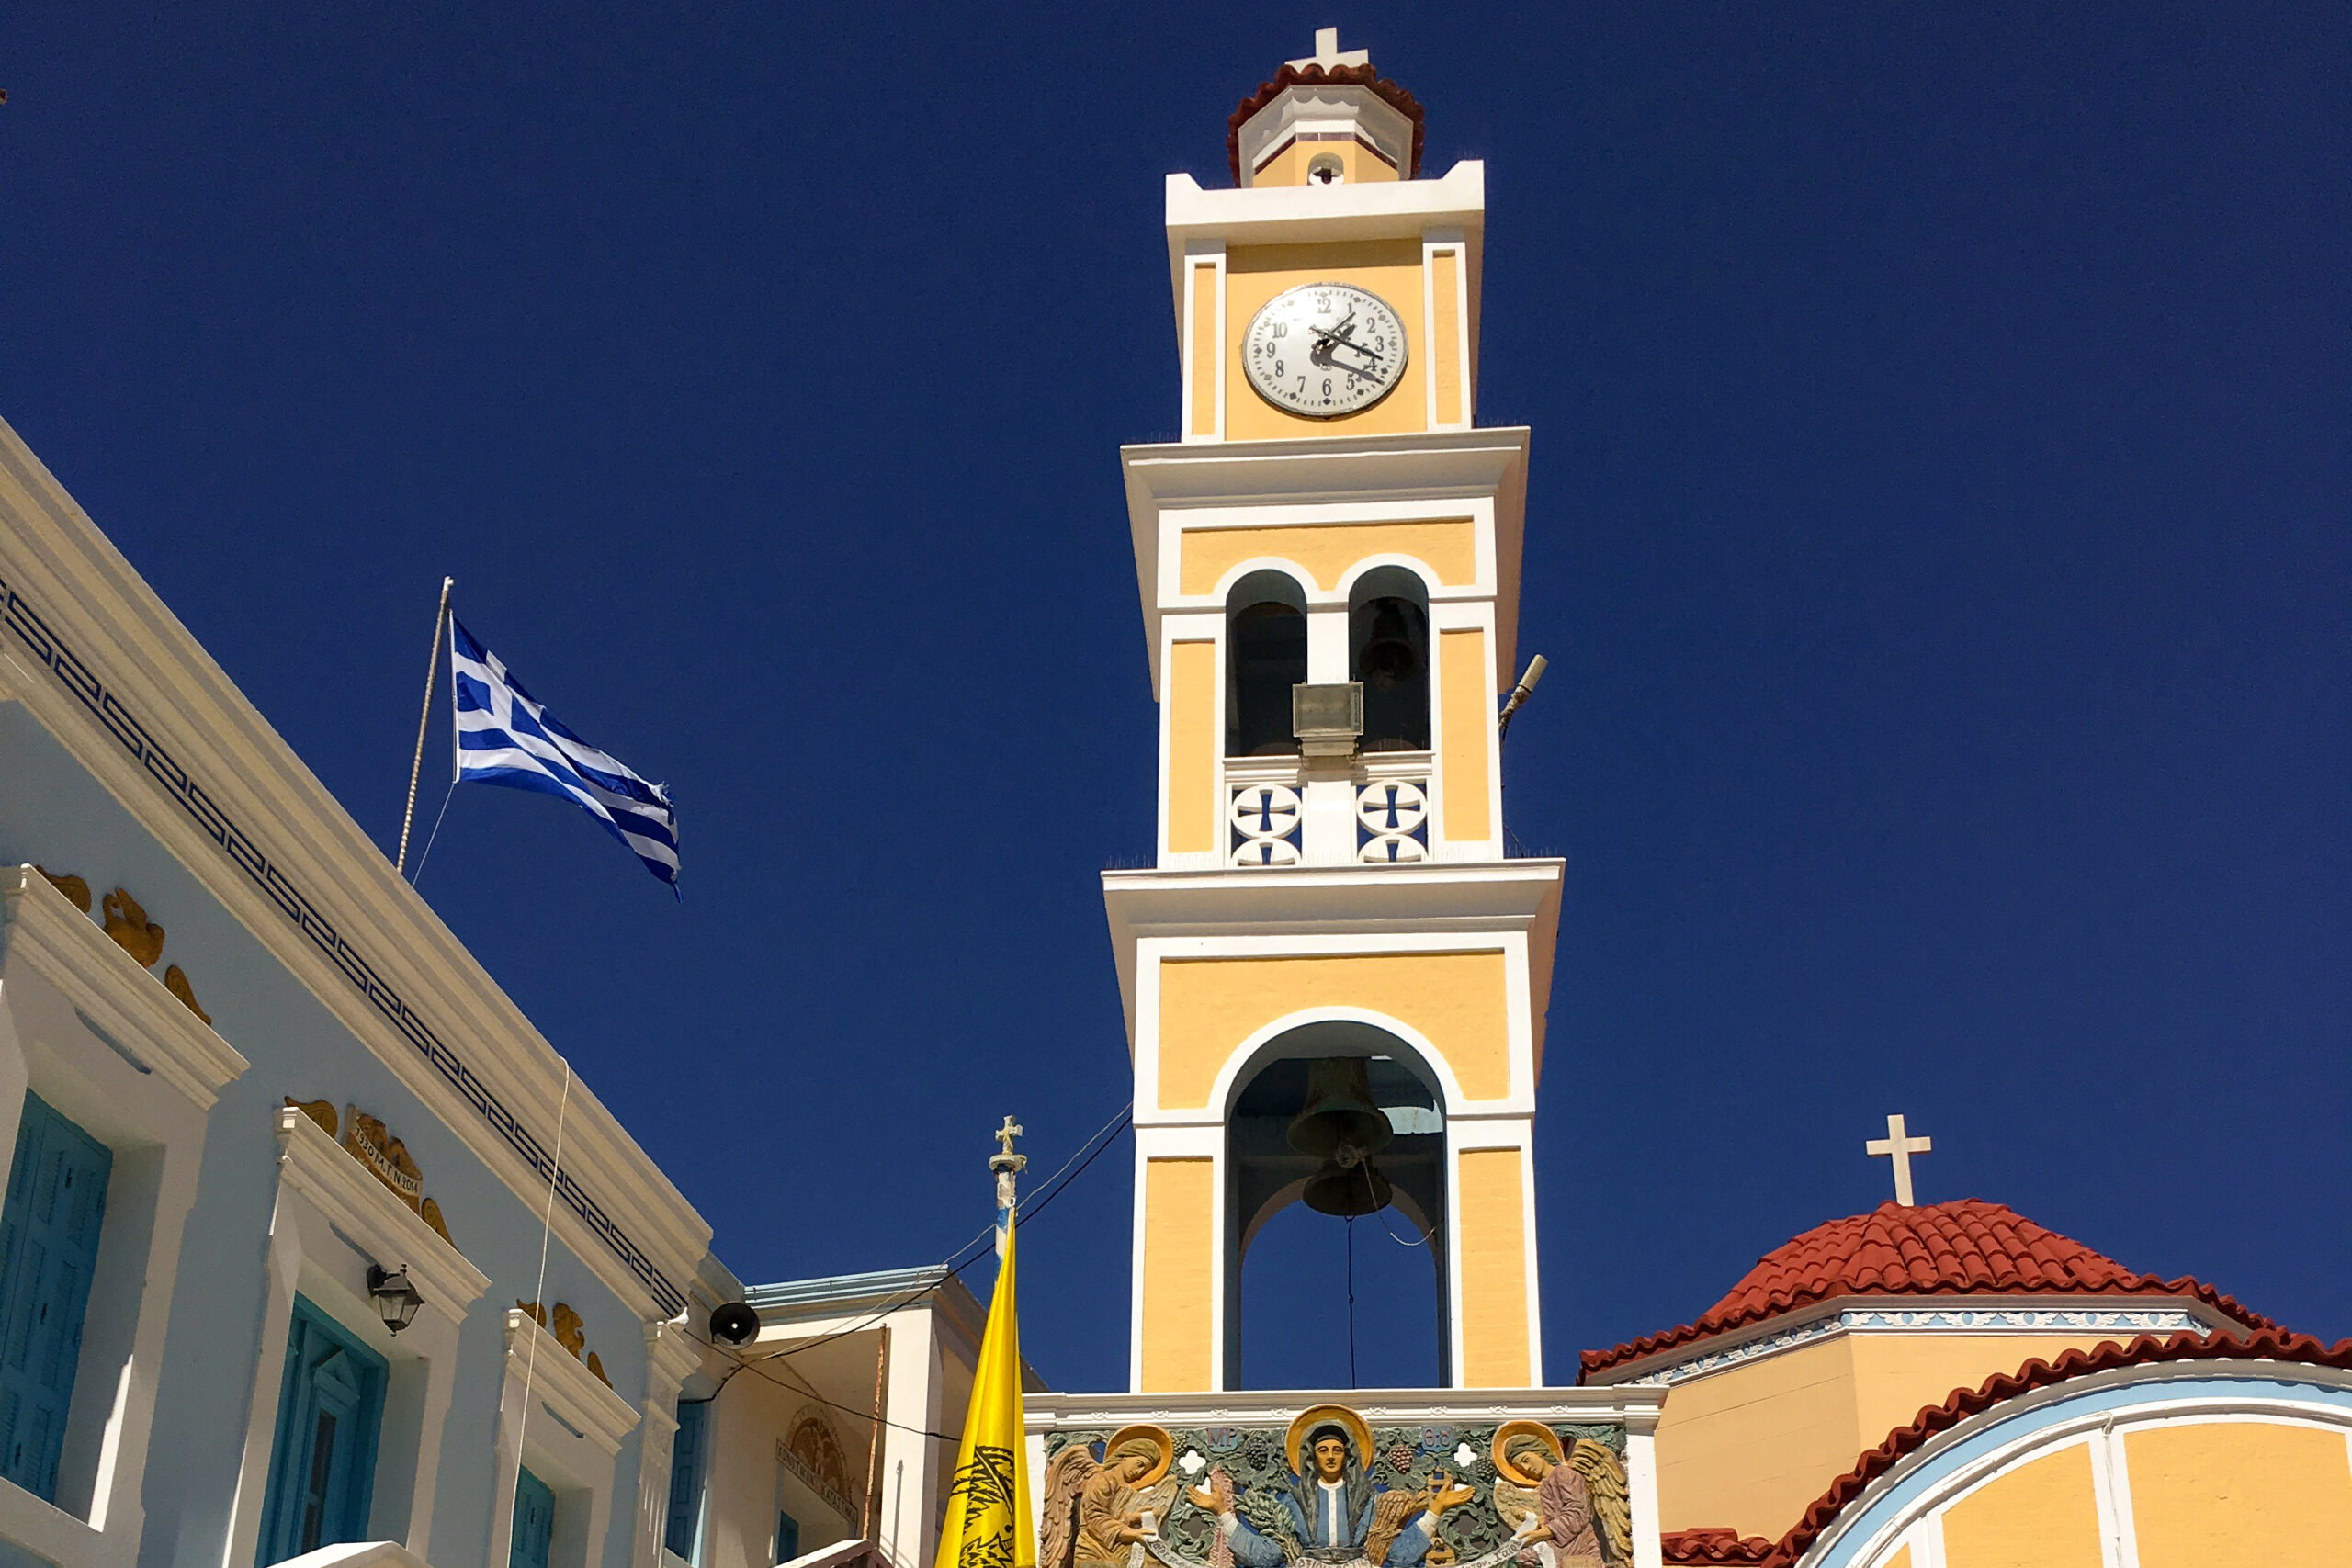 campanile di colore giallo di una piccola chiesa con una bandiera della grecia che sventola